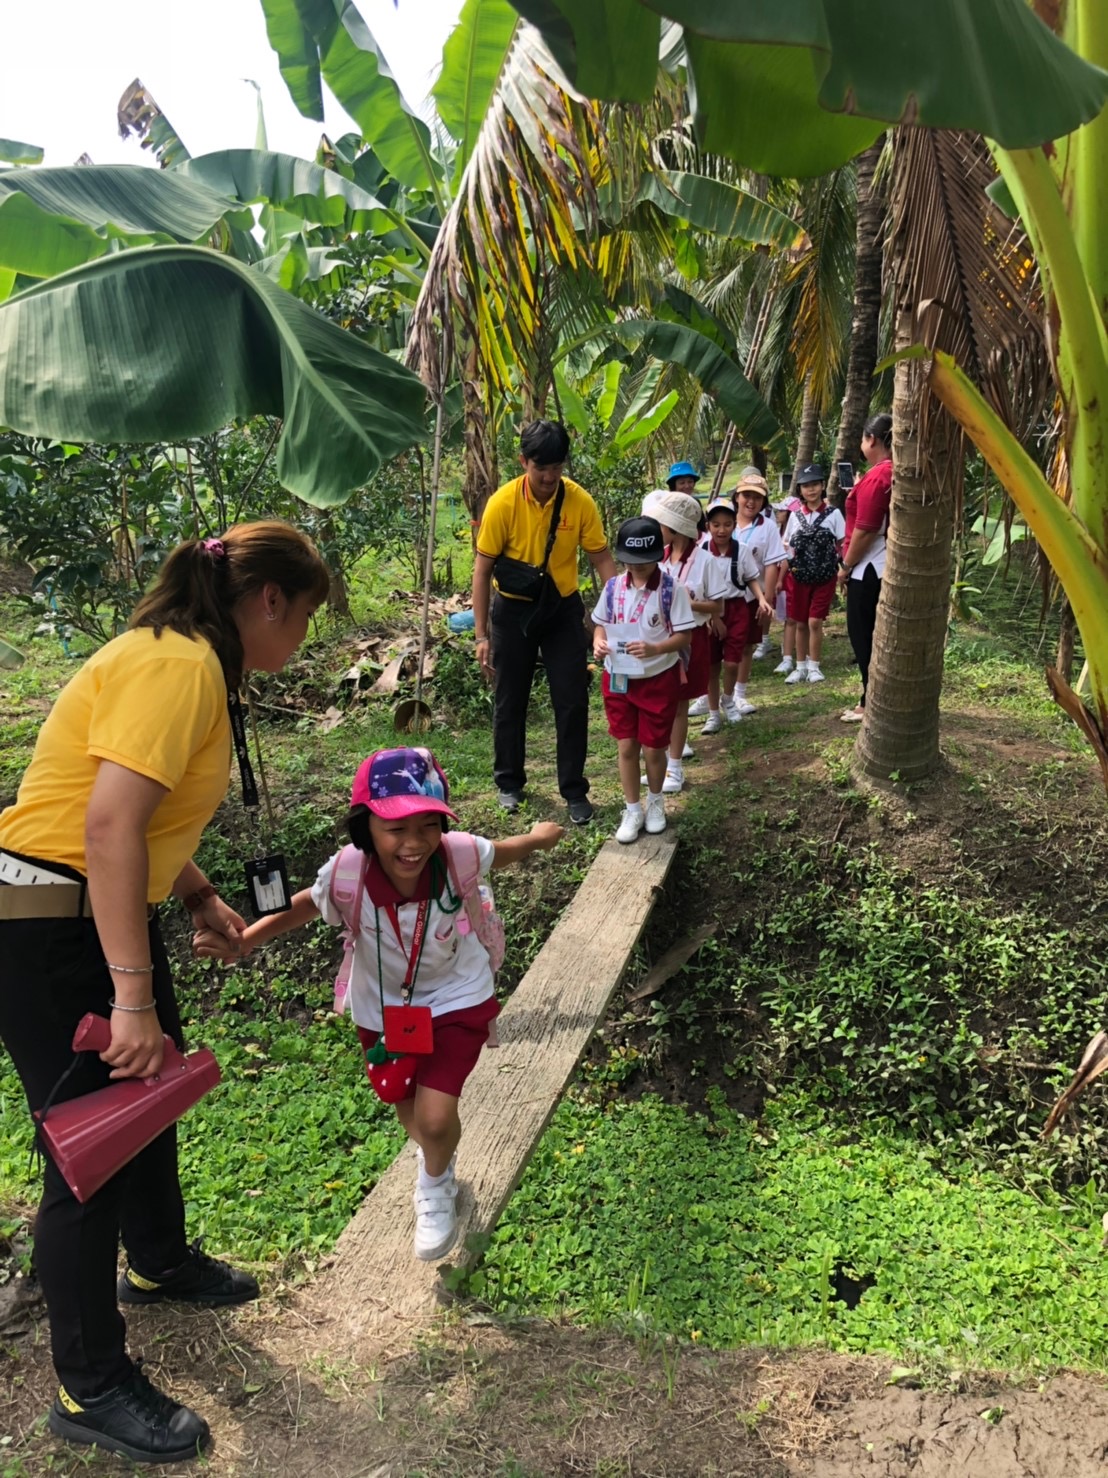 เด็ก ๆ เดินเที่ยวชมสวนผลไม้ที่ชุมชนบ้านบางพลับ (รูปภาพ: thailandtourismdirectory)